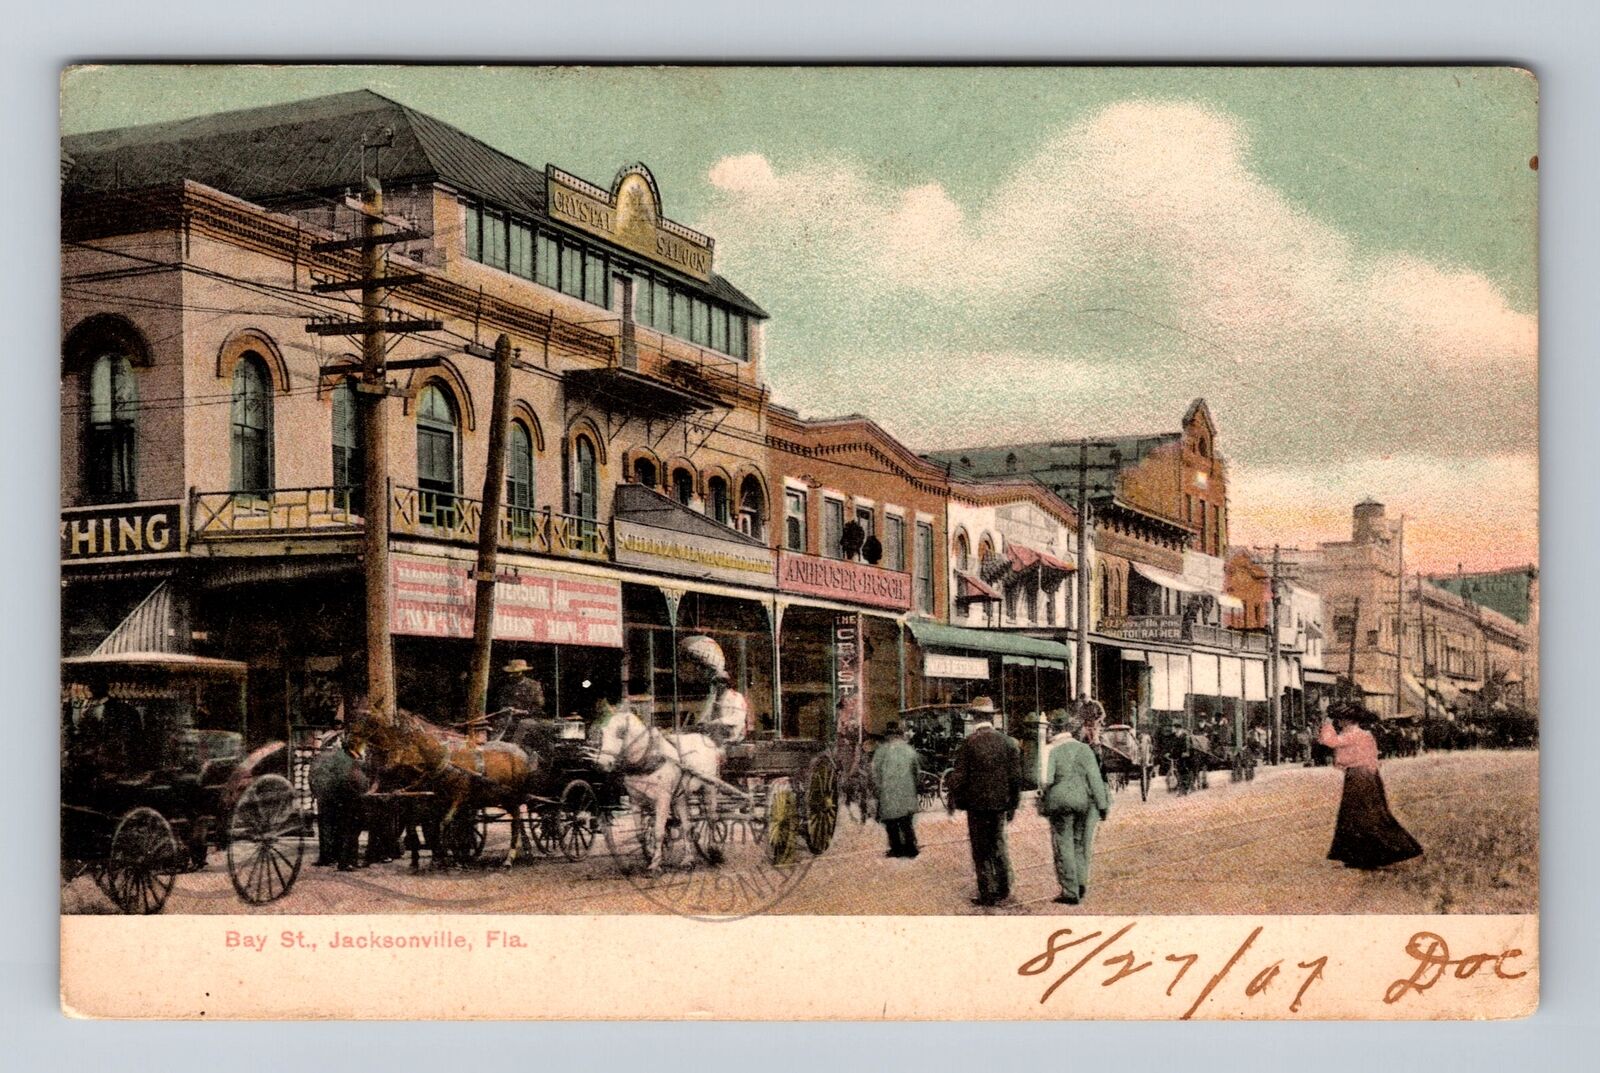 Jacksonville FL-Florida, Business District, Bay Street, Antique Vintage Postcard